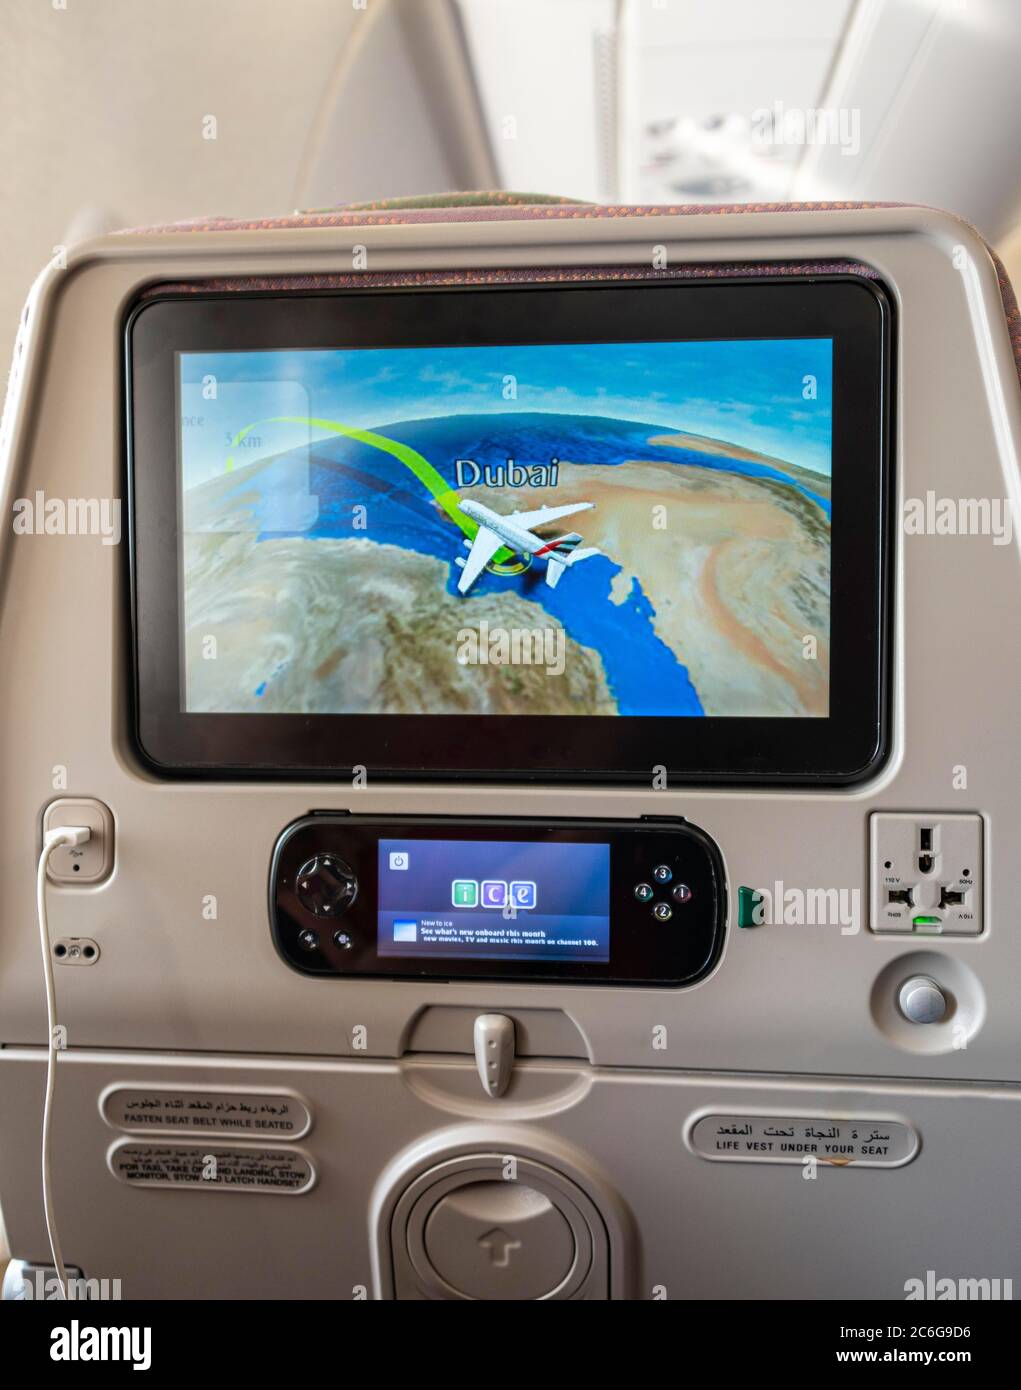 Schermo che mostra la posizione del volo Dubai sullo schienale in aereo, Emirates Airline, vista interna, Dubai, Emirati Arabi Uniti Foto Stock